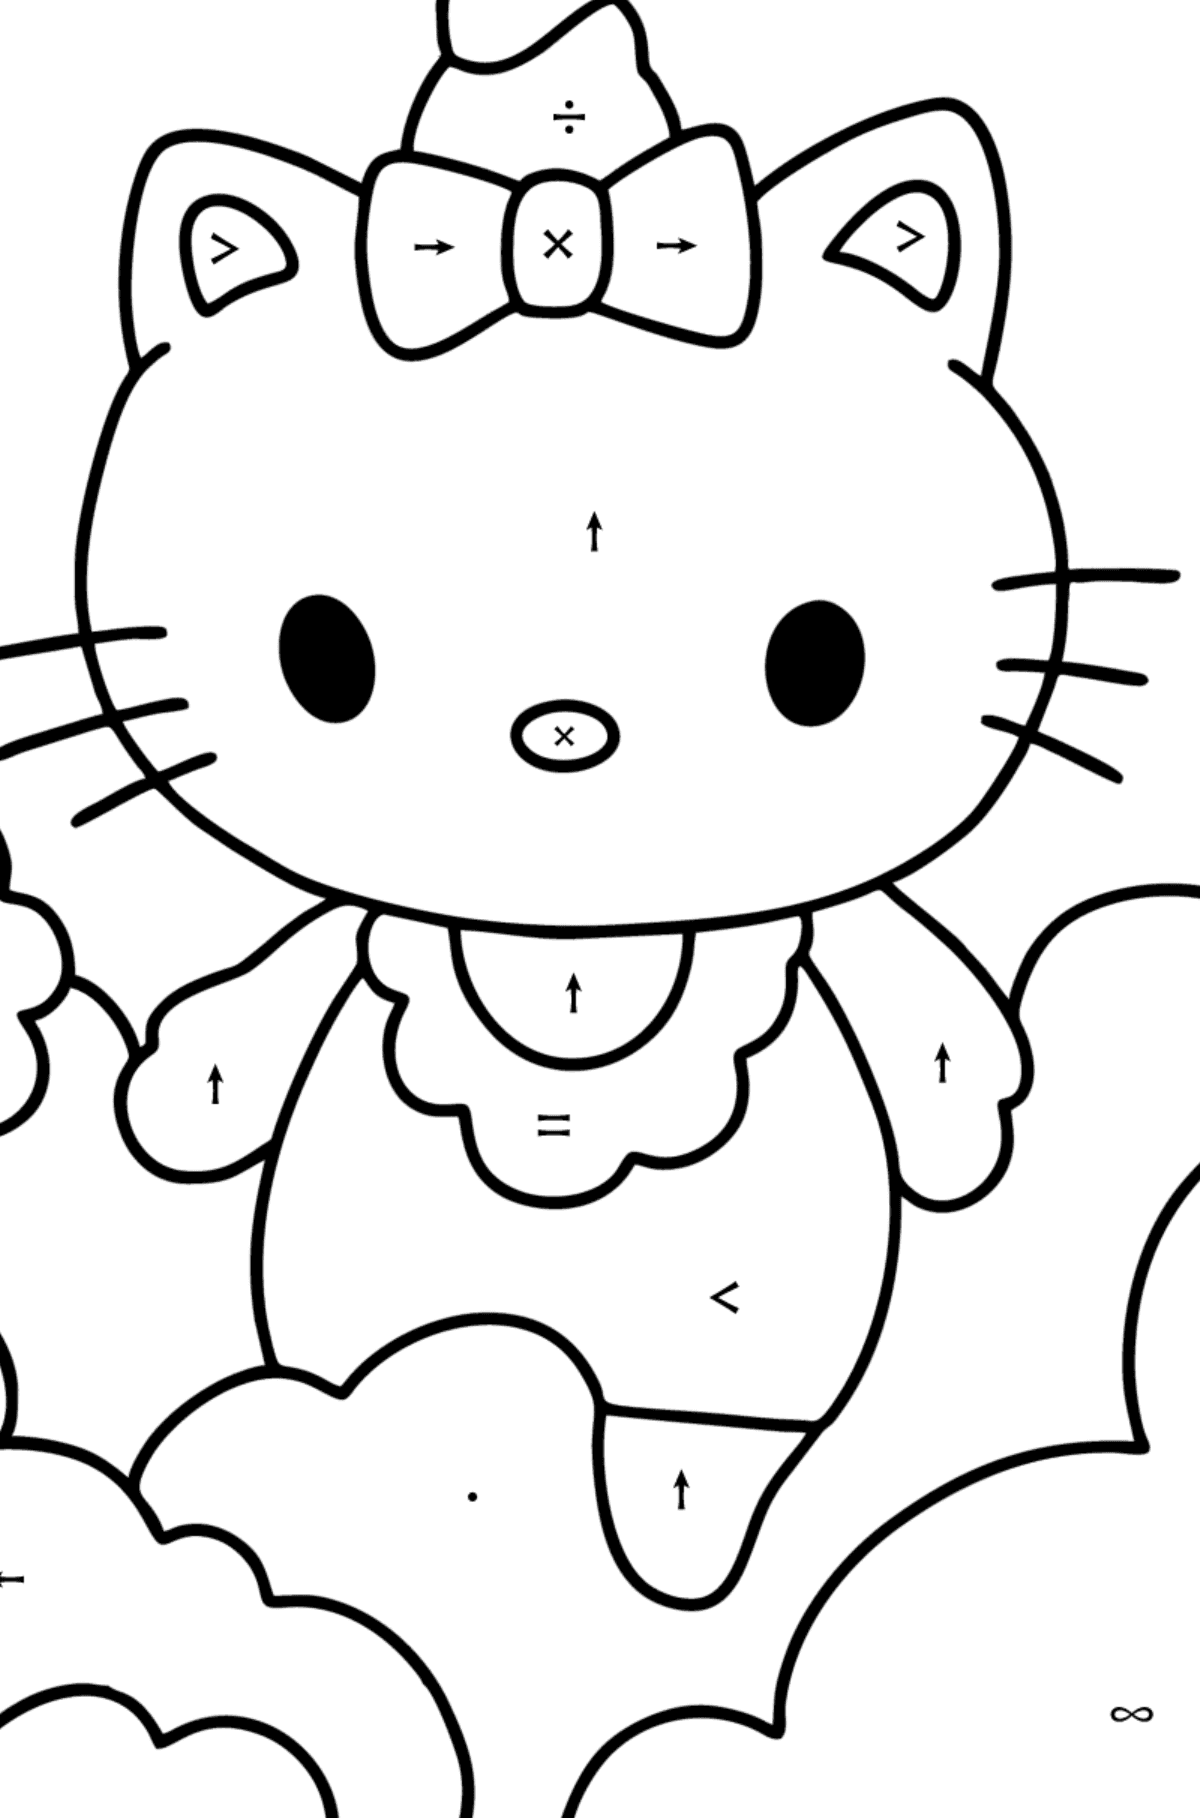 Boyama sayfası Hello Kitty tek boynuzlu at - Sembollerle Boyama çocuklar için